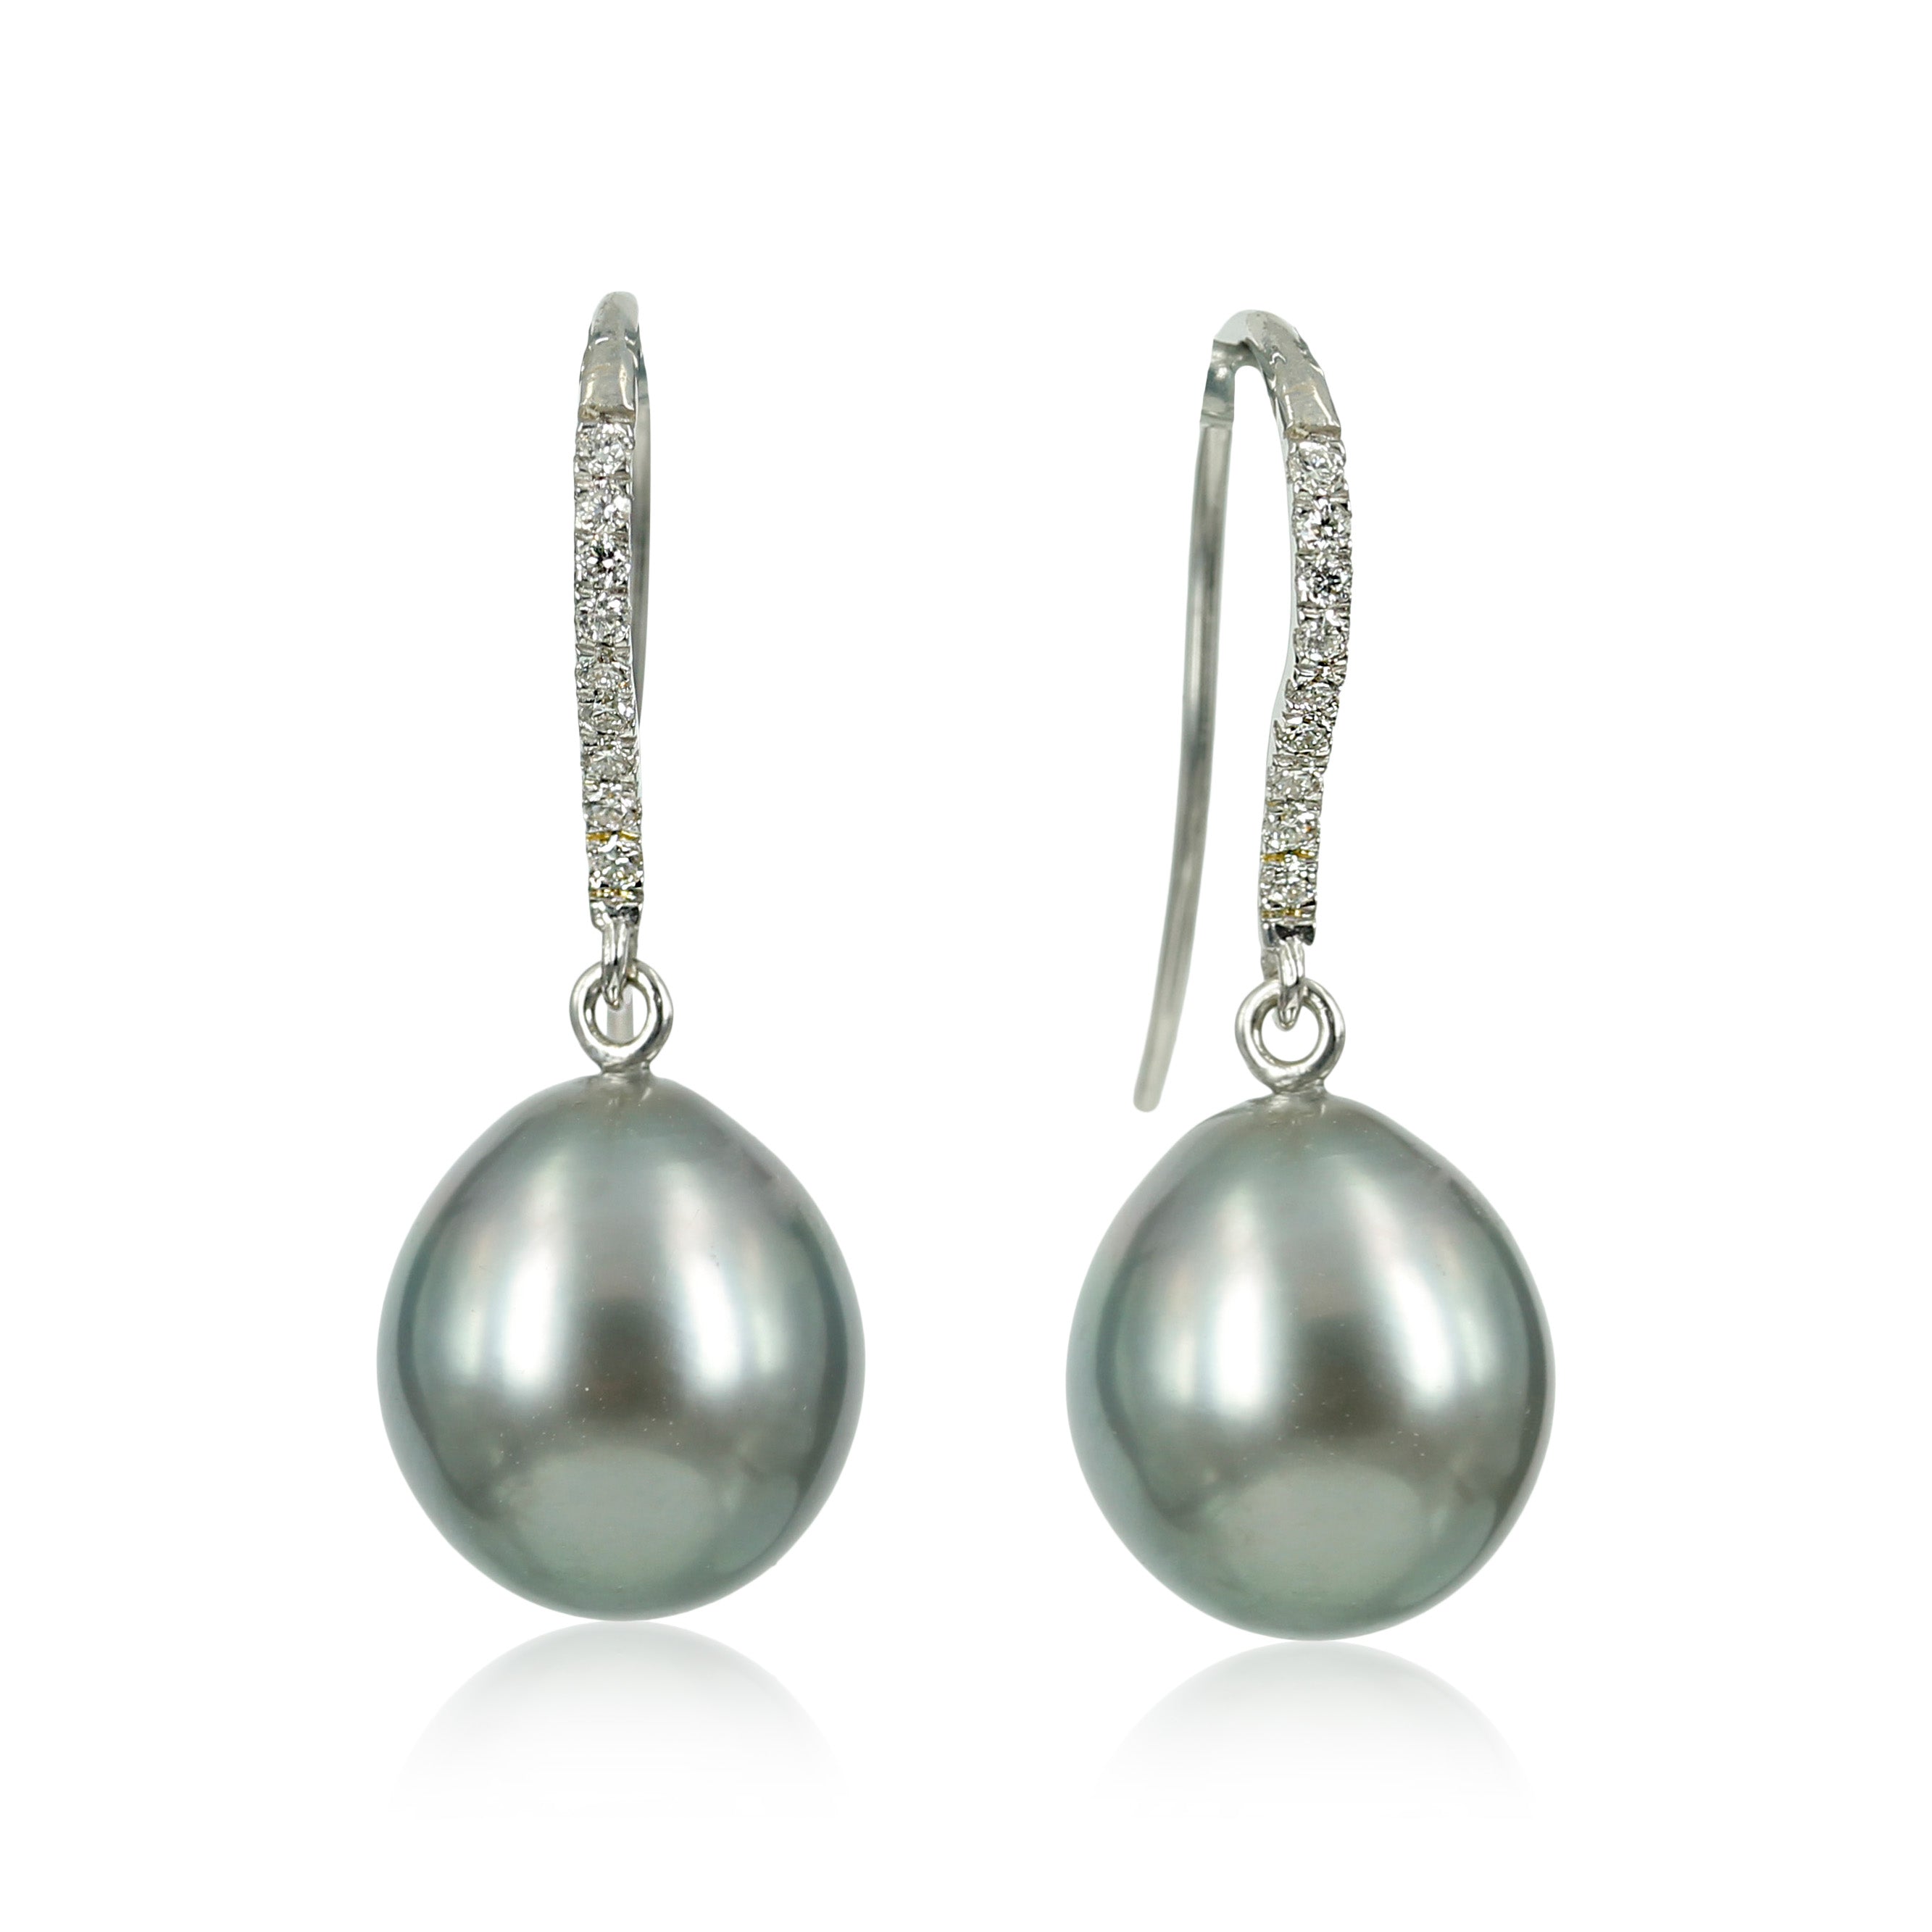 05-328 - Smukke ørekroge med brillanter og lys grå tahiti perle, ørebøjlen er fyldt med funklende diamanter i alt 0,05 ct og afsluttes med skønne lyse tahiti perler.   Smykket er perfekt til hverdagens fest, enkel og smuk i designet med et drys af luksus.